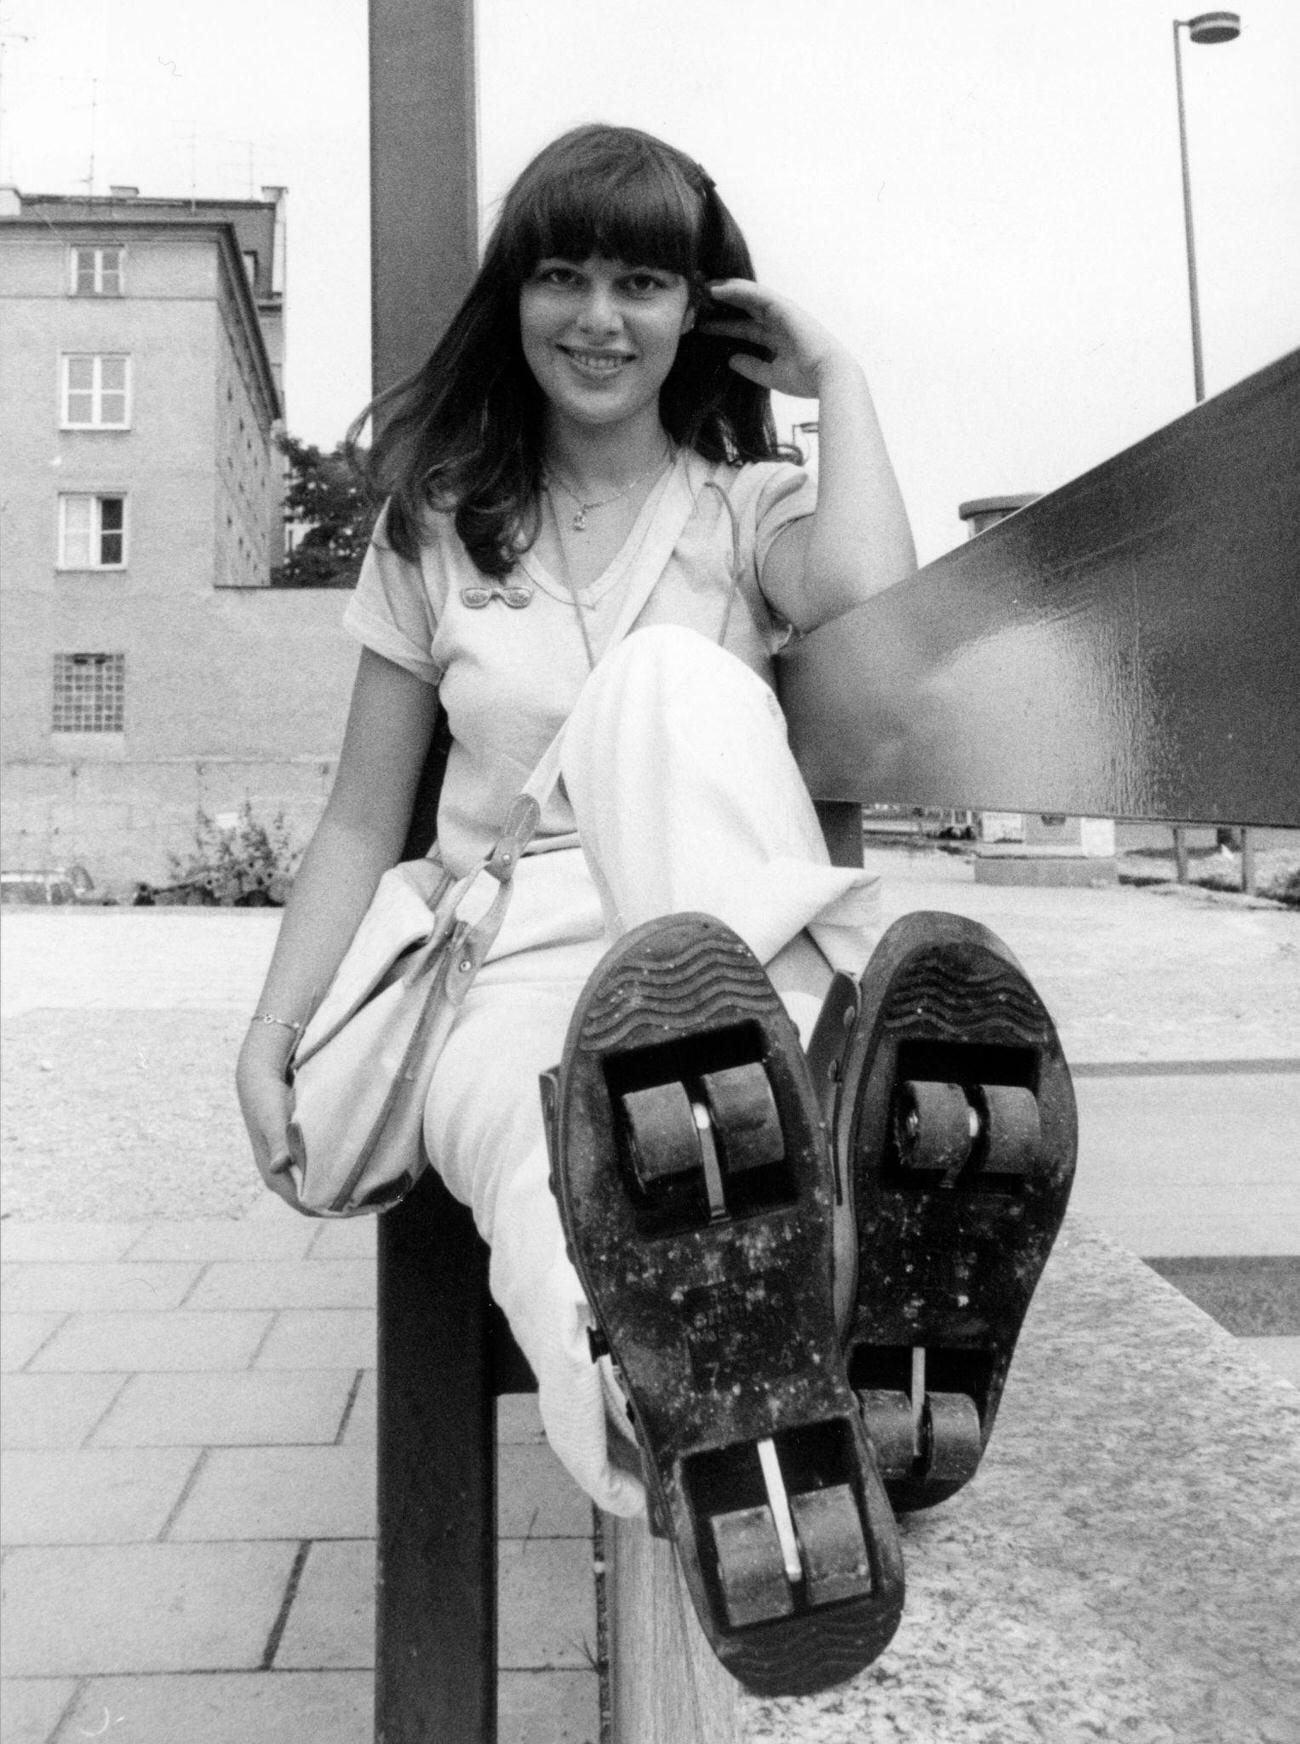 Young Woman in Munich Wears Pop-Wheels Rollerskates, 1980